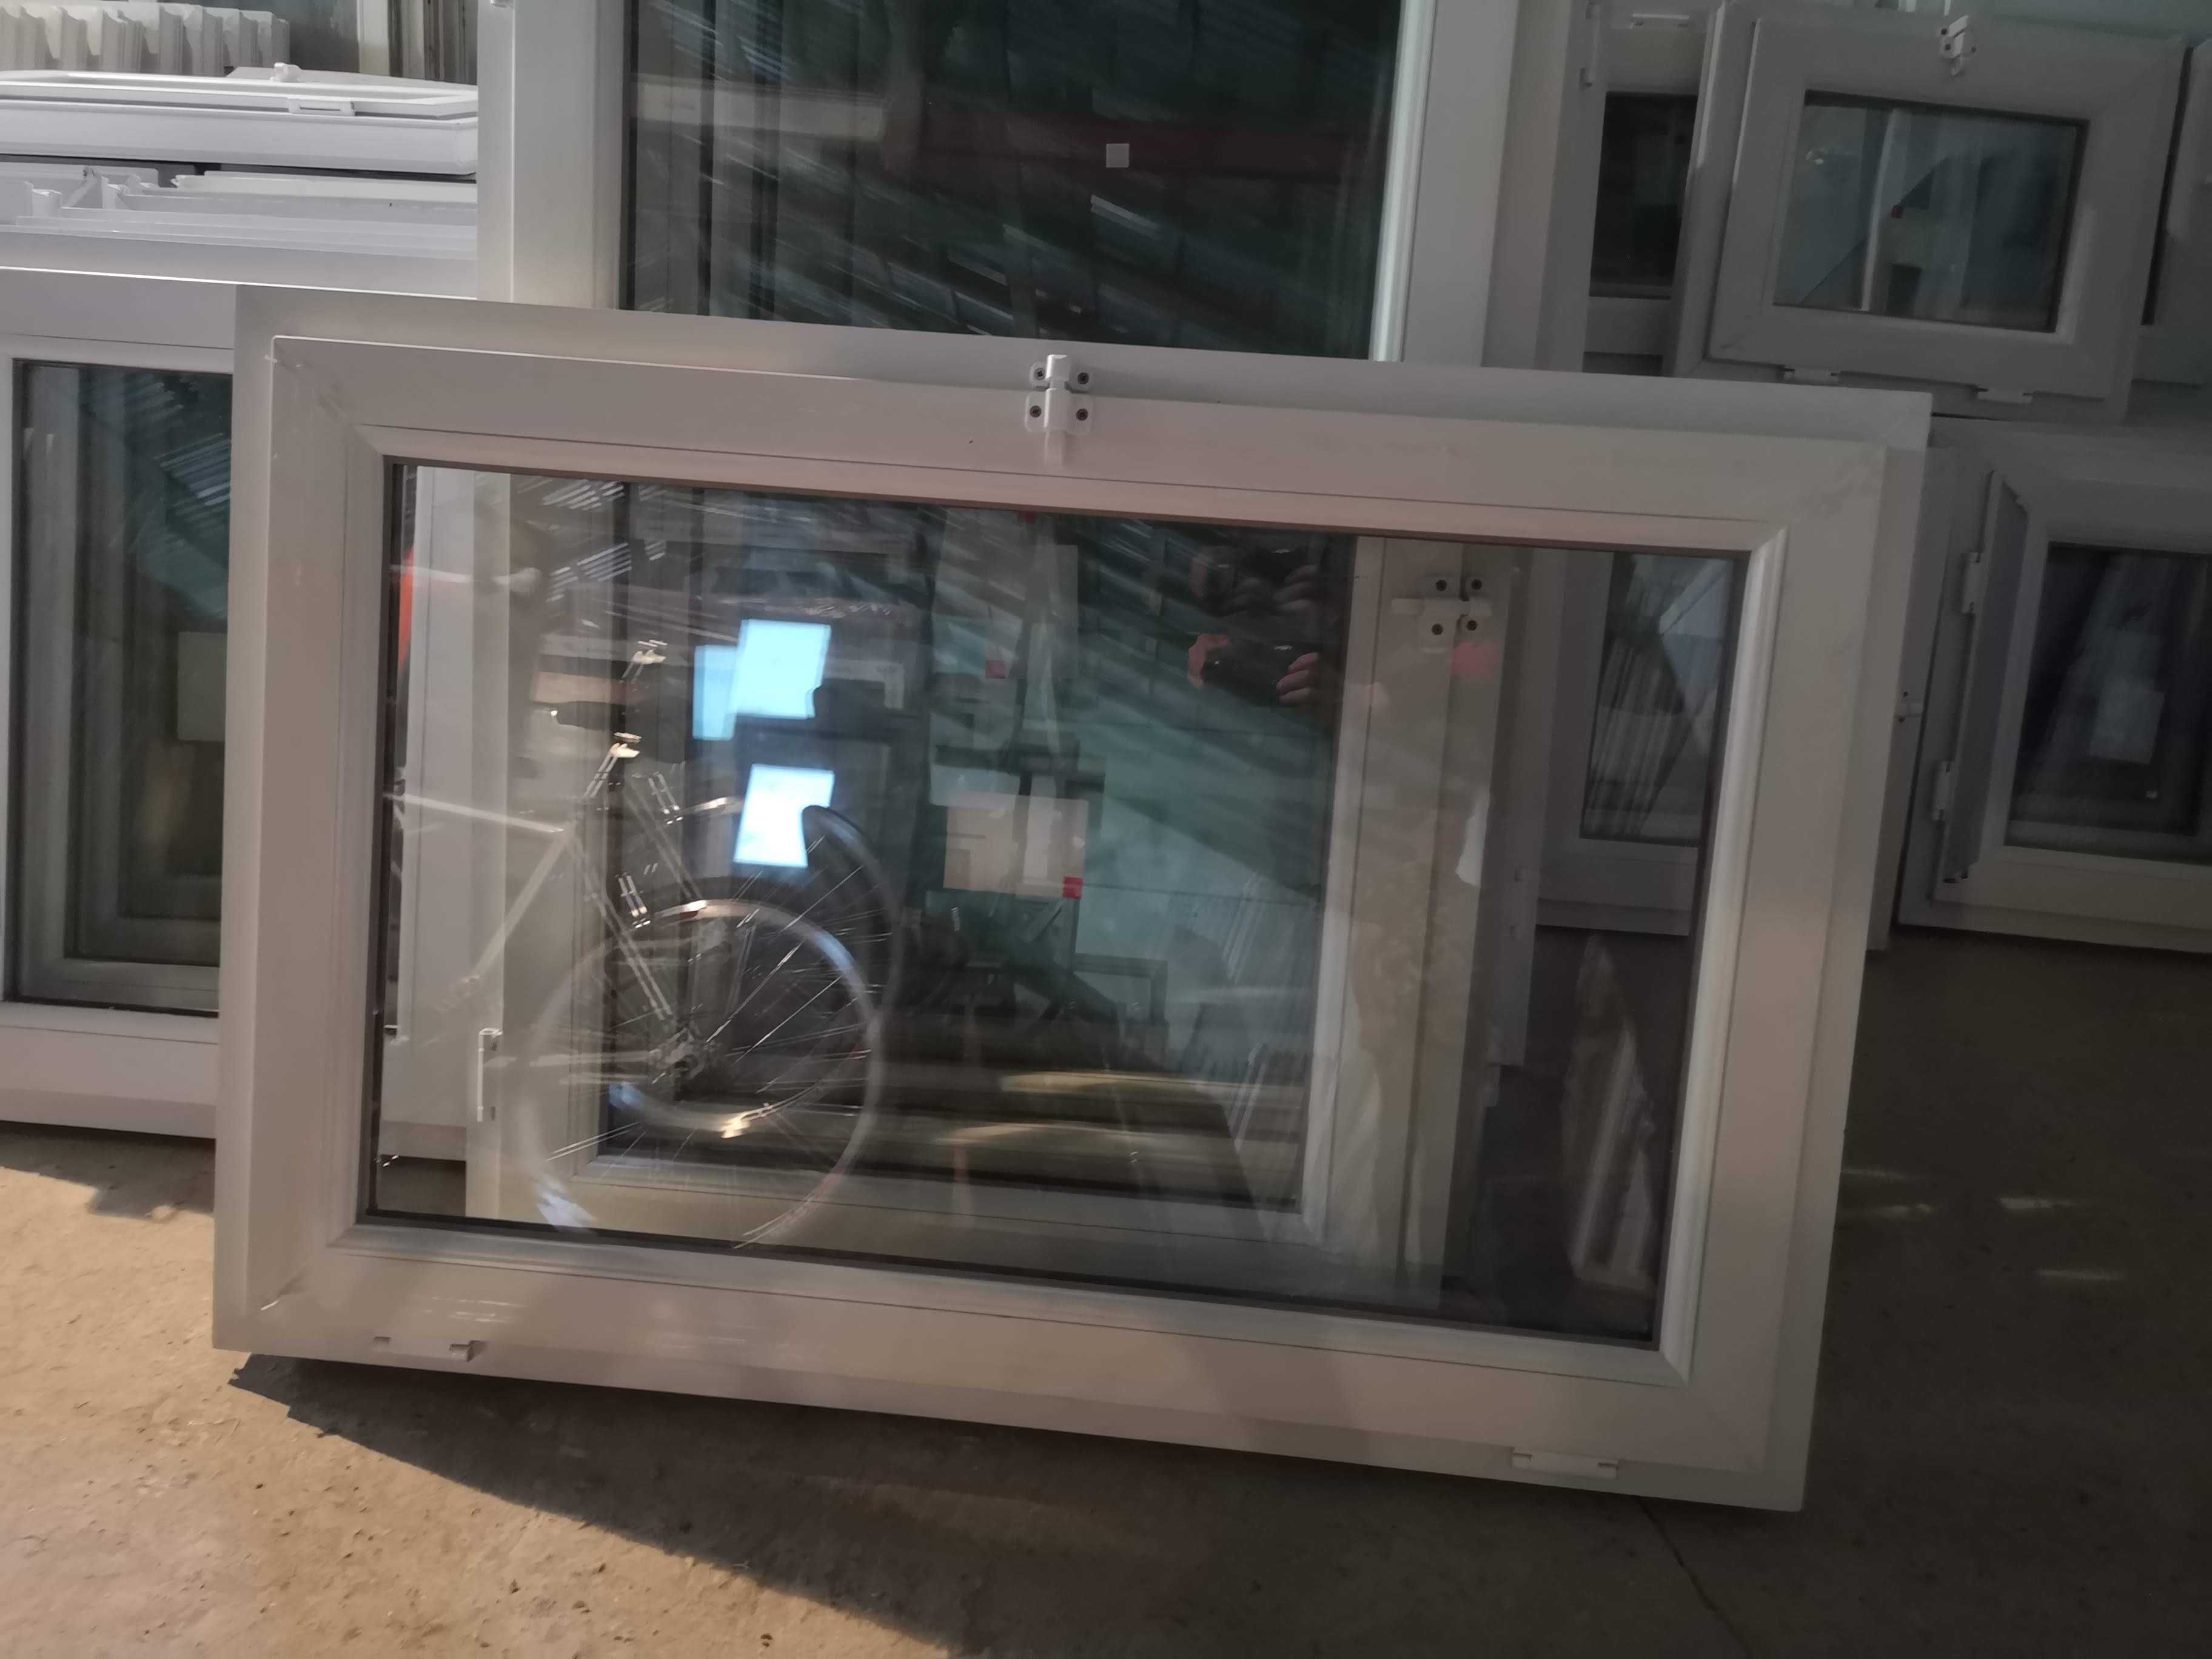 Nowe okno PCV 80 x 120 cm Skład Okien Nowych/Używanych